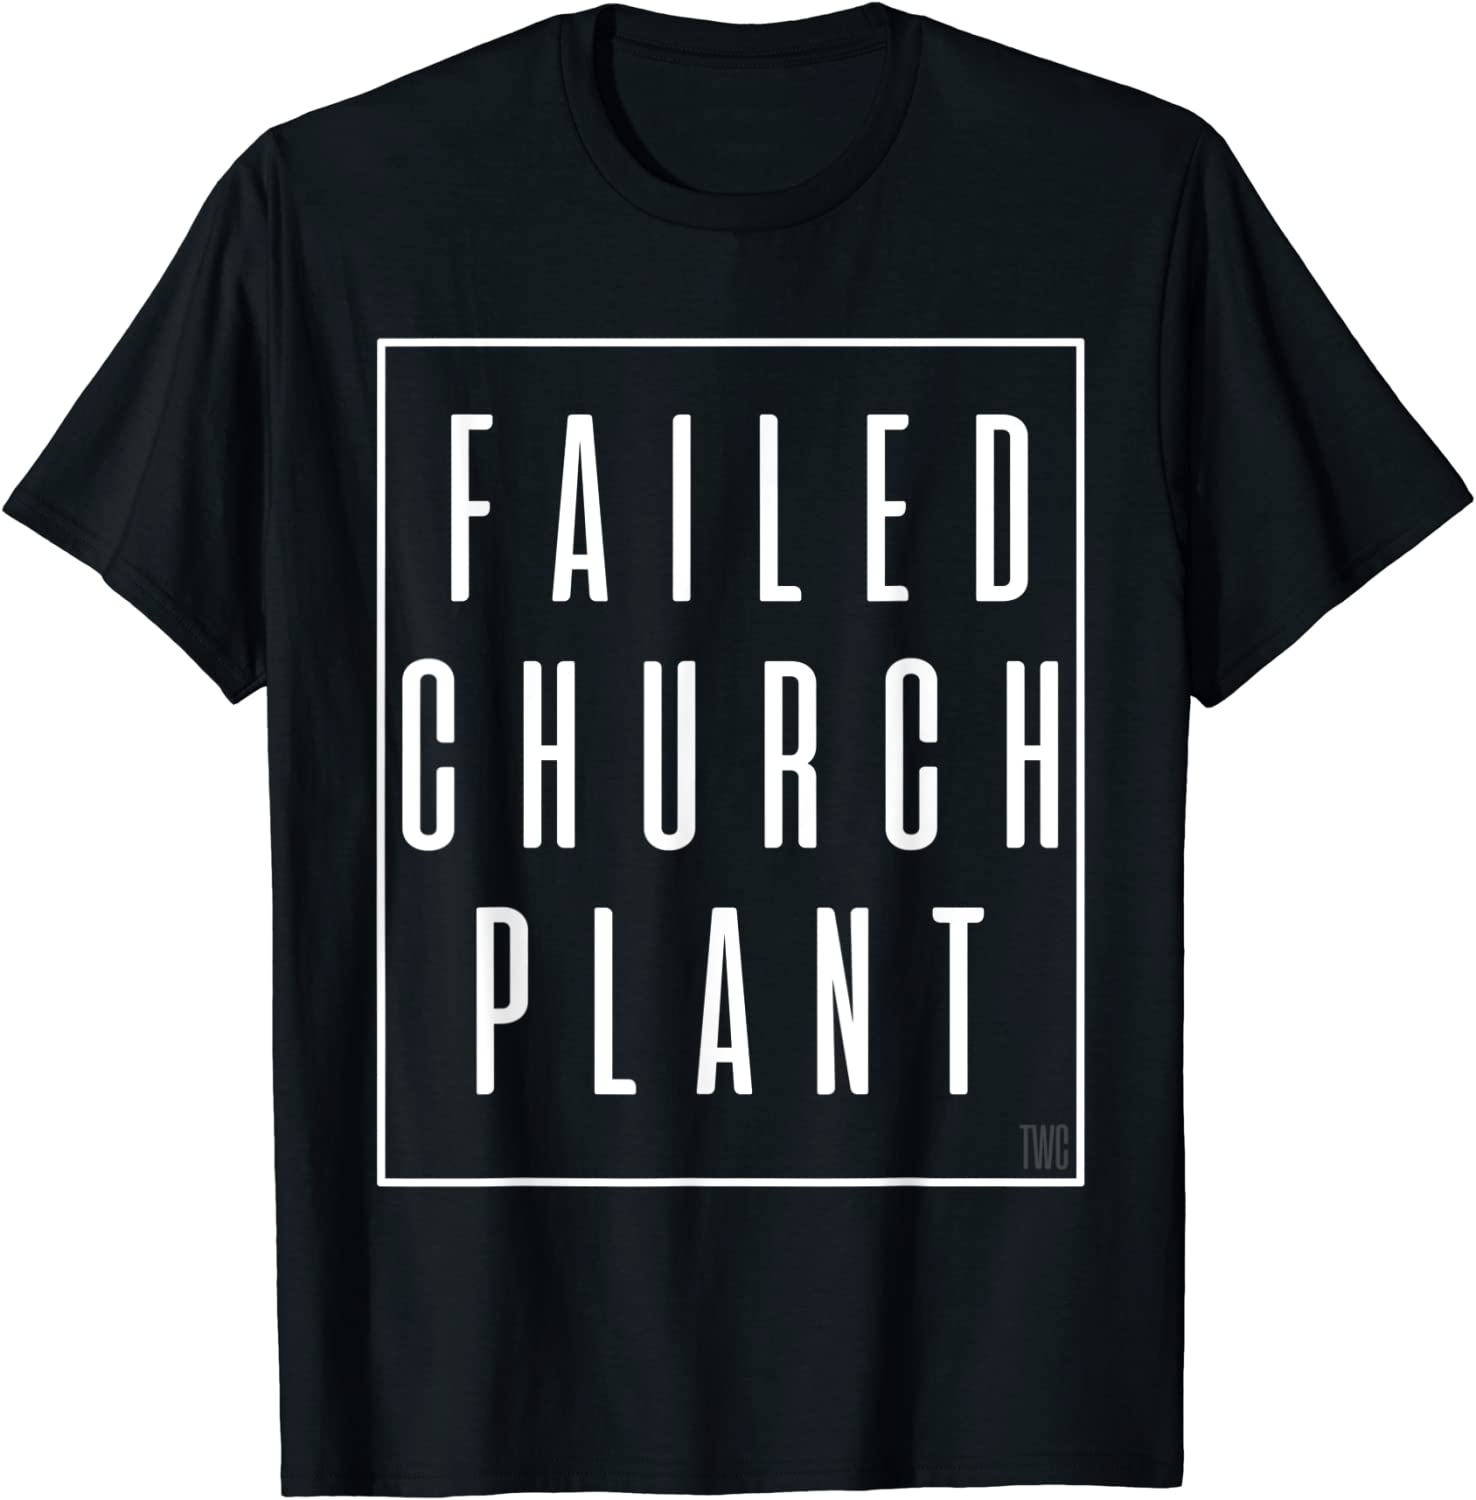 Failed Church Plant TWC Tee Shirt - ShirtElephant Office